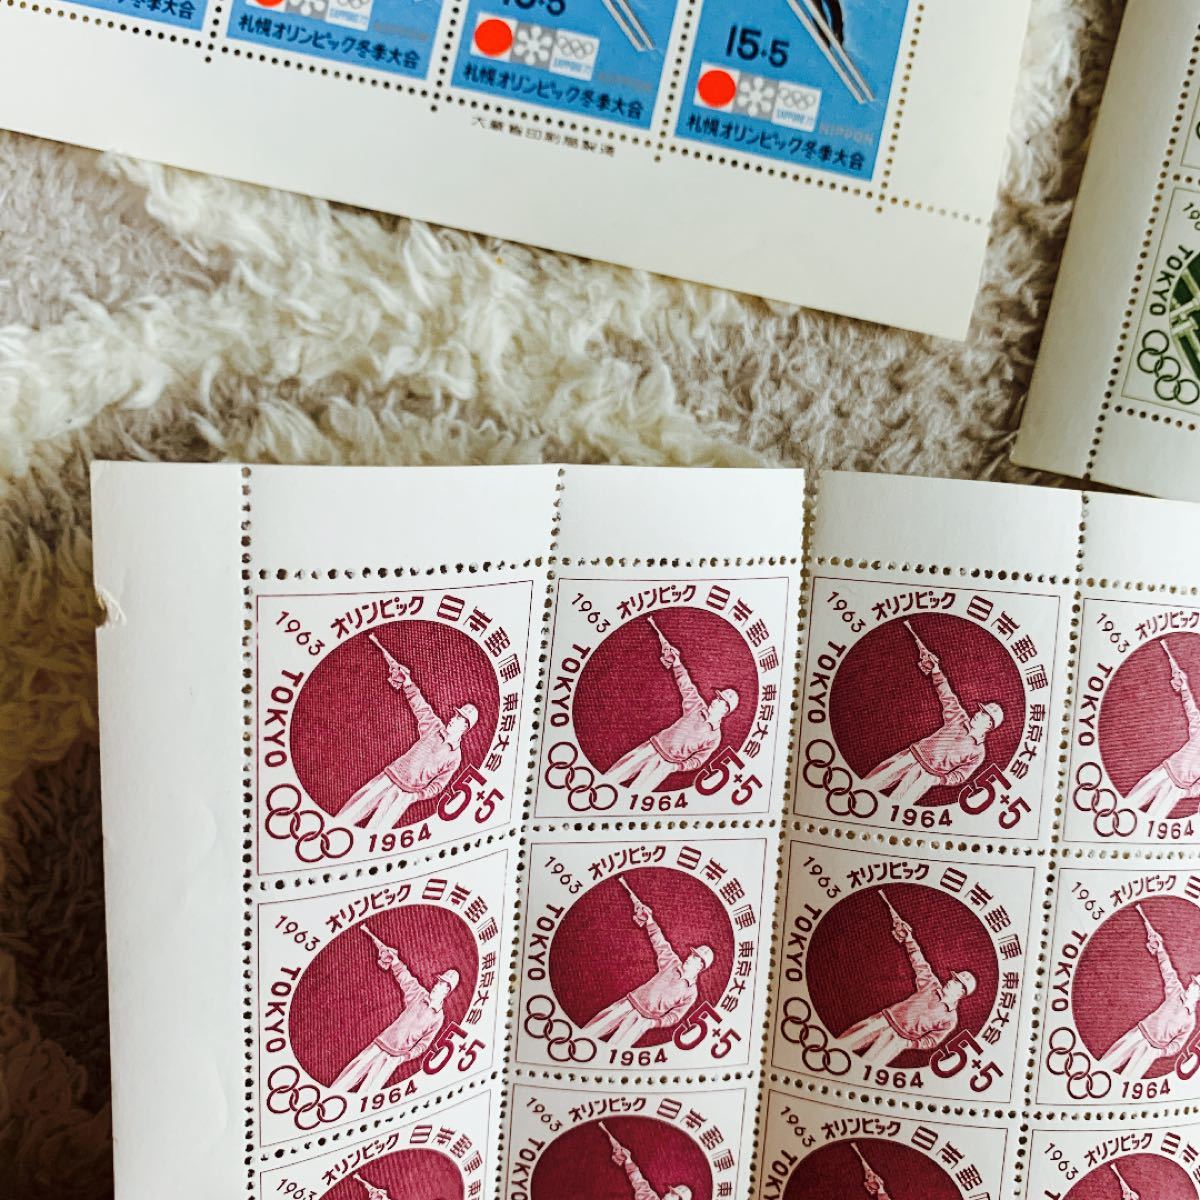 東京オリンピック 1964 札幌オリンピック冬季大会 記念切手シート